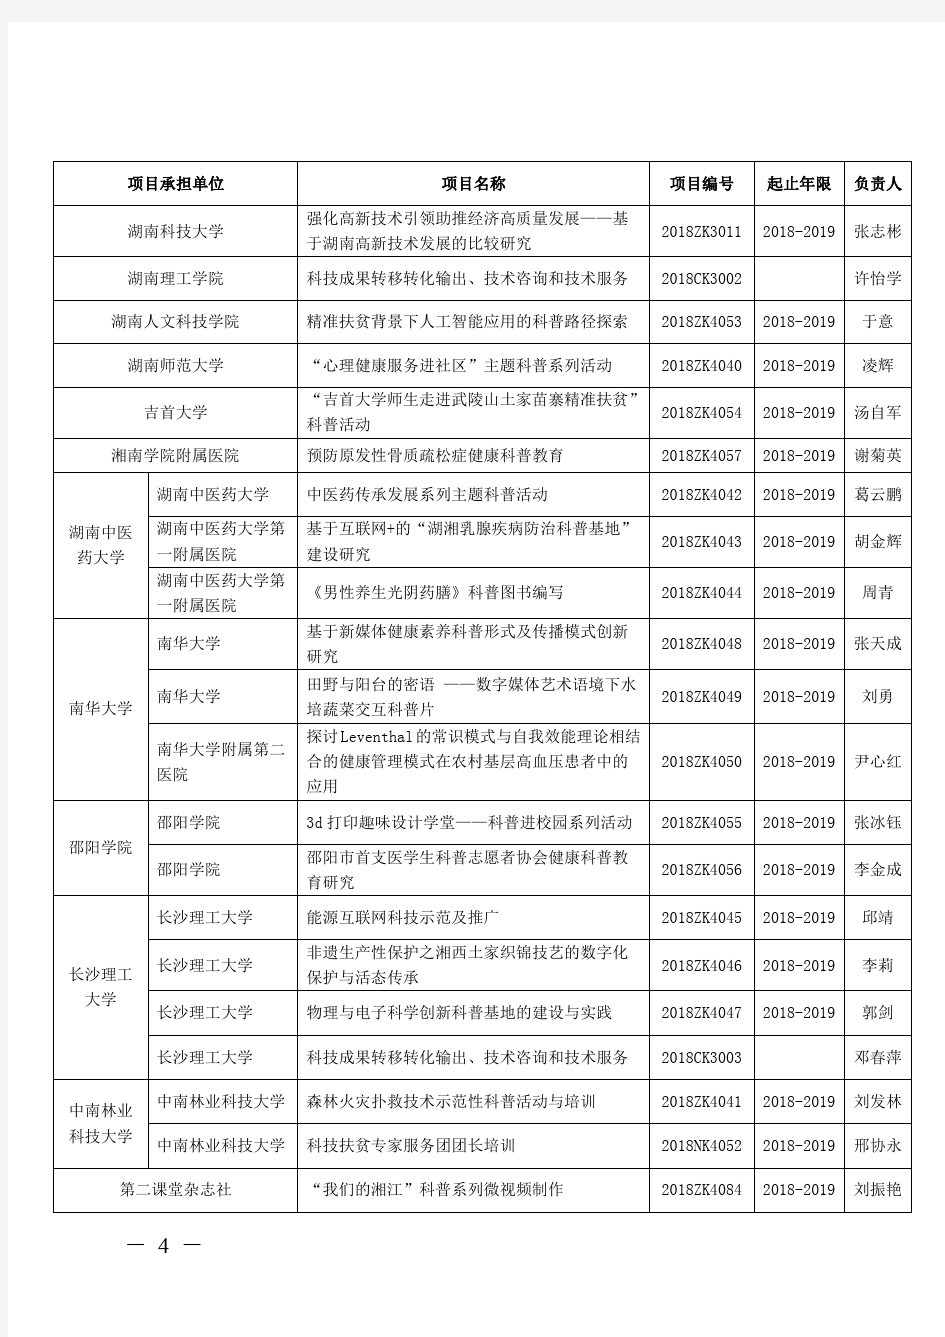 2018年度湖南省技术创新引导计划项目立项汇总表